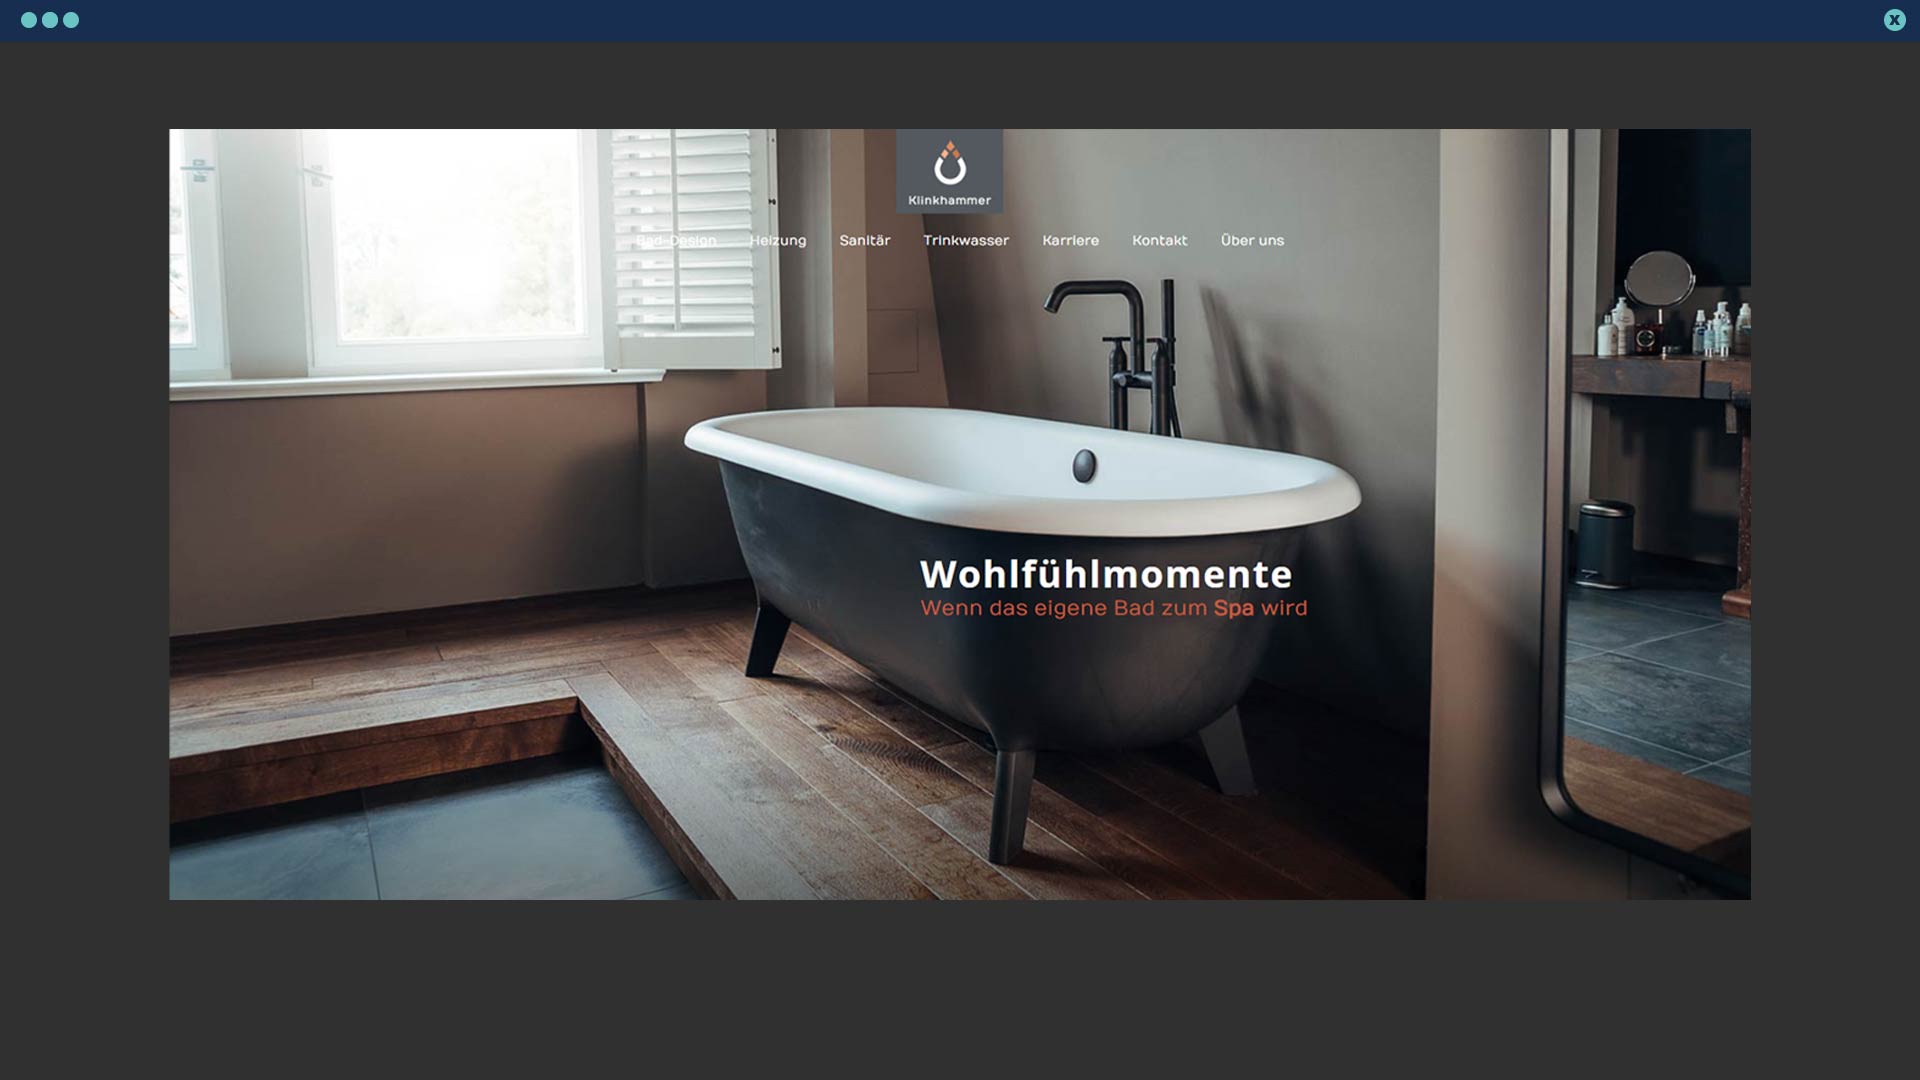 webdesign-kowerxklinkhammerk